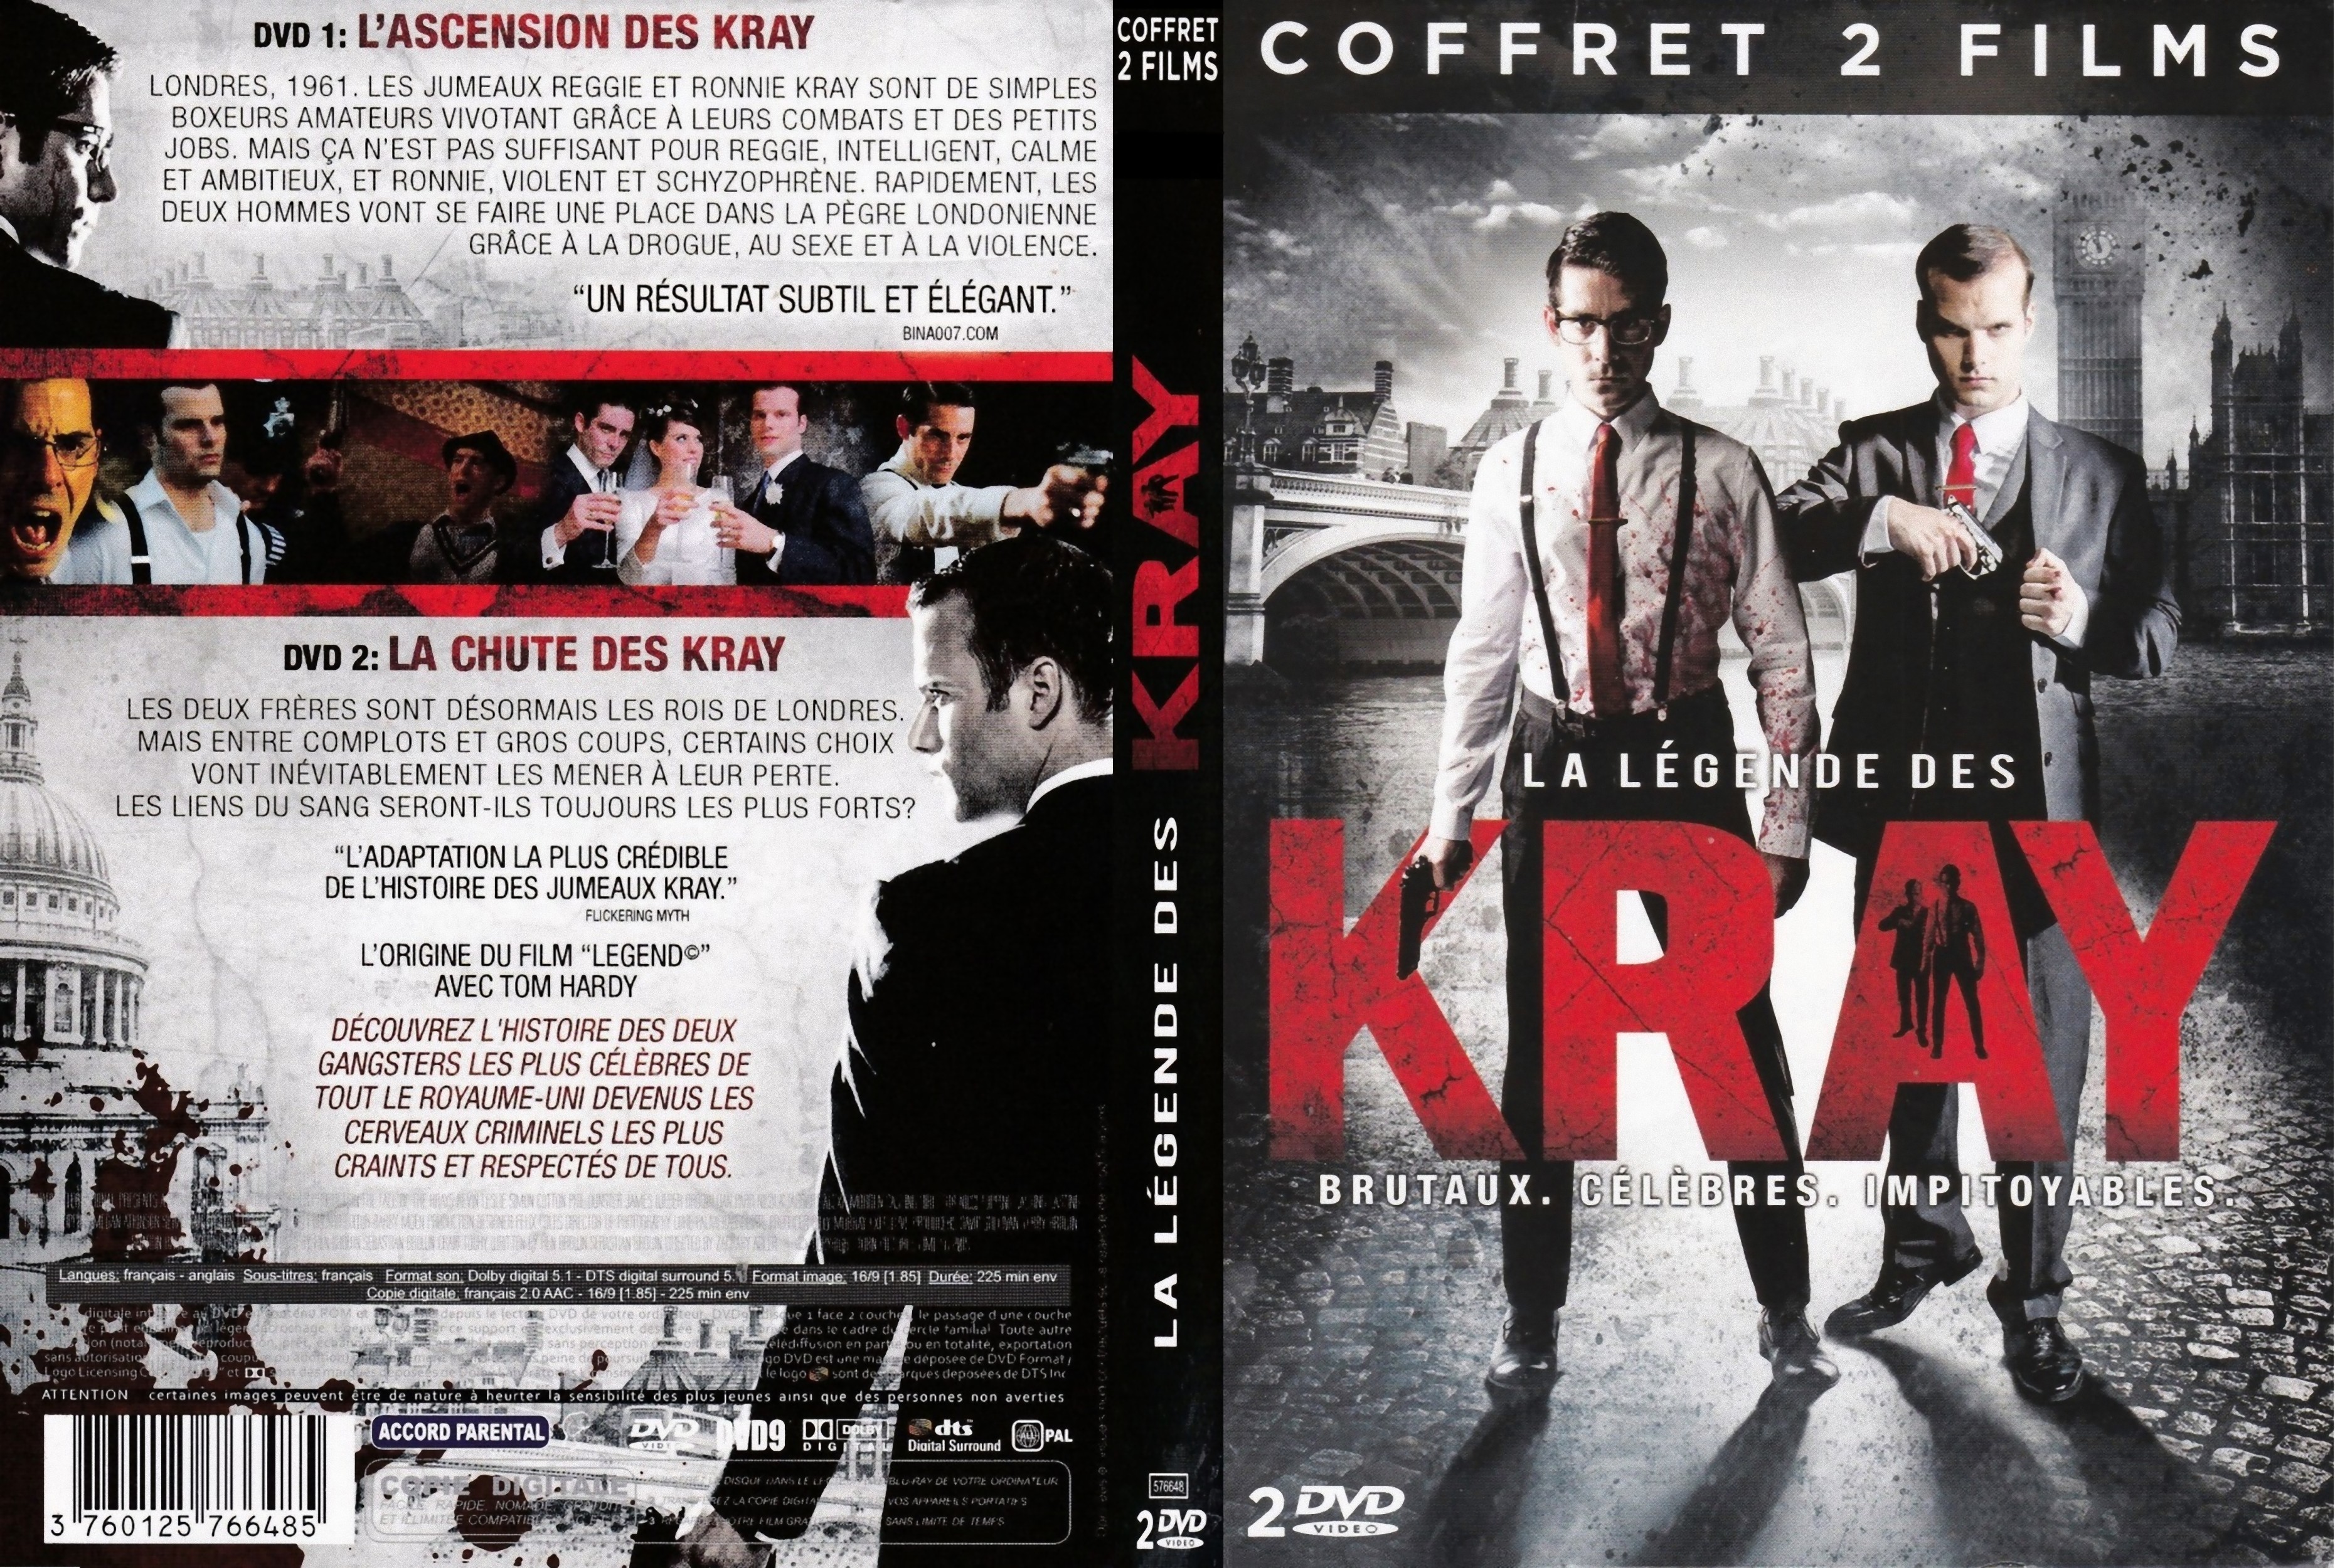 Jaquette DVD Legendes des Krays (les 2 films)